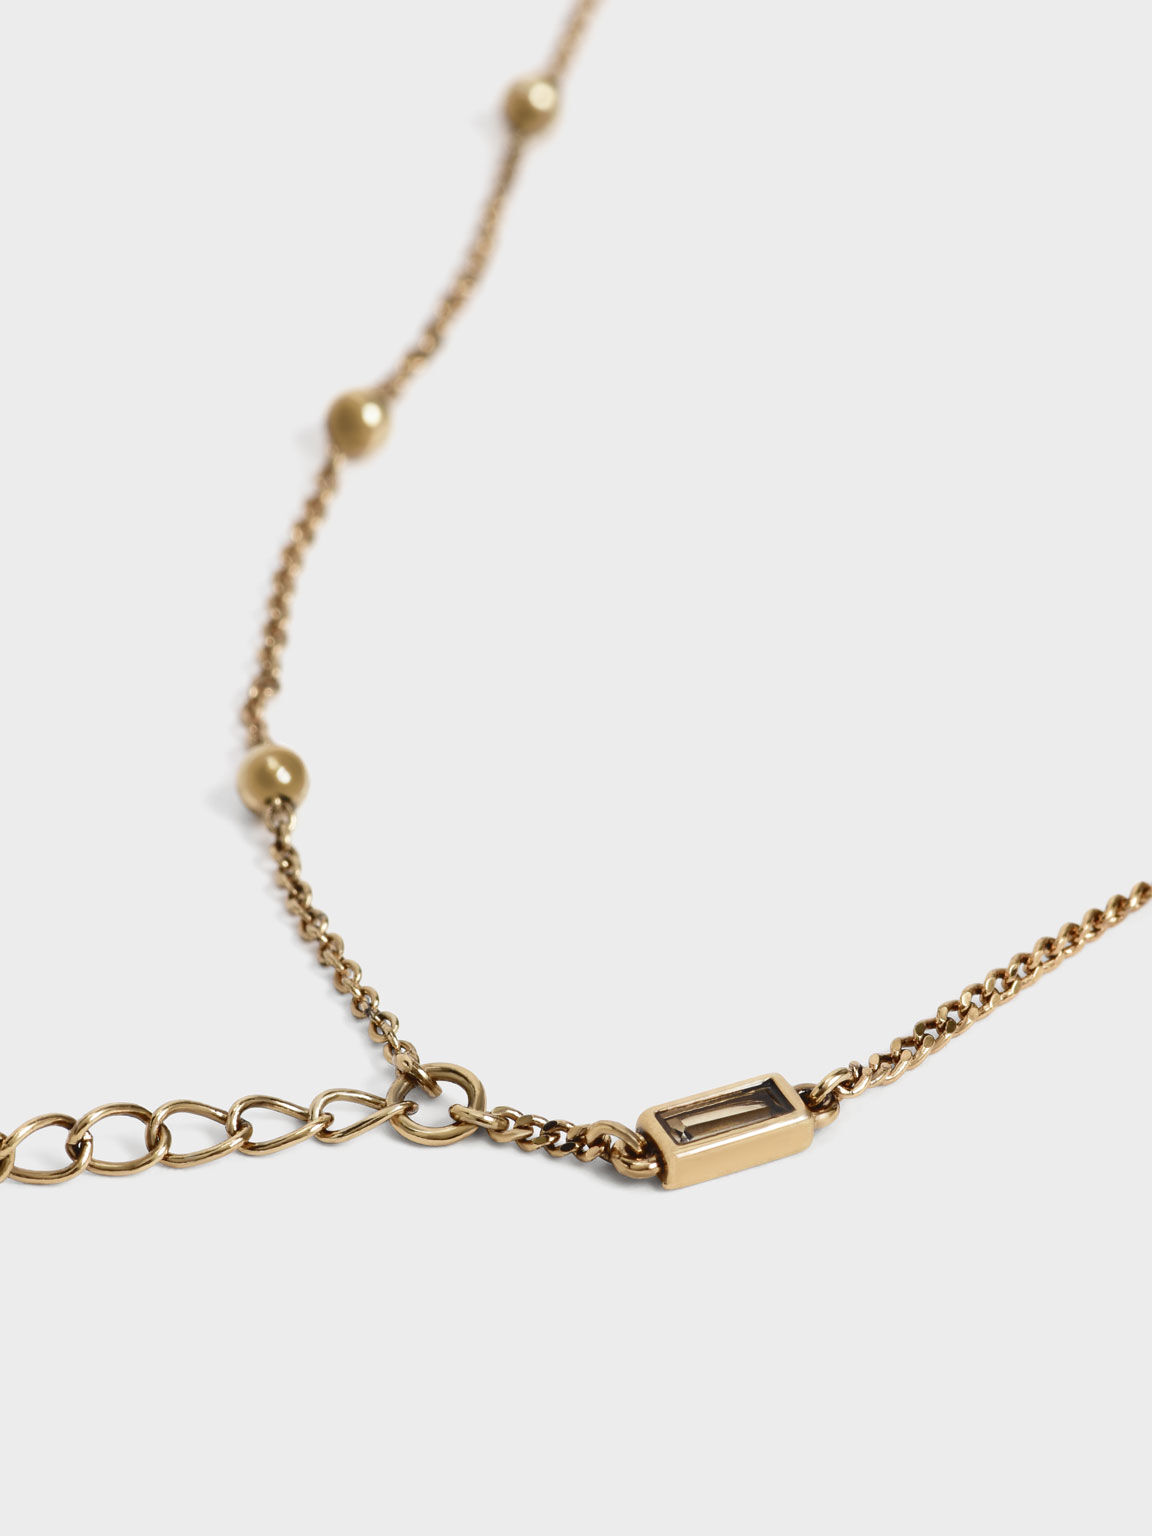 Crystal-Embellished Double Chain Bracelet, Sand, hi-res